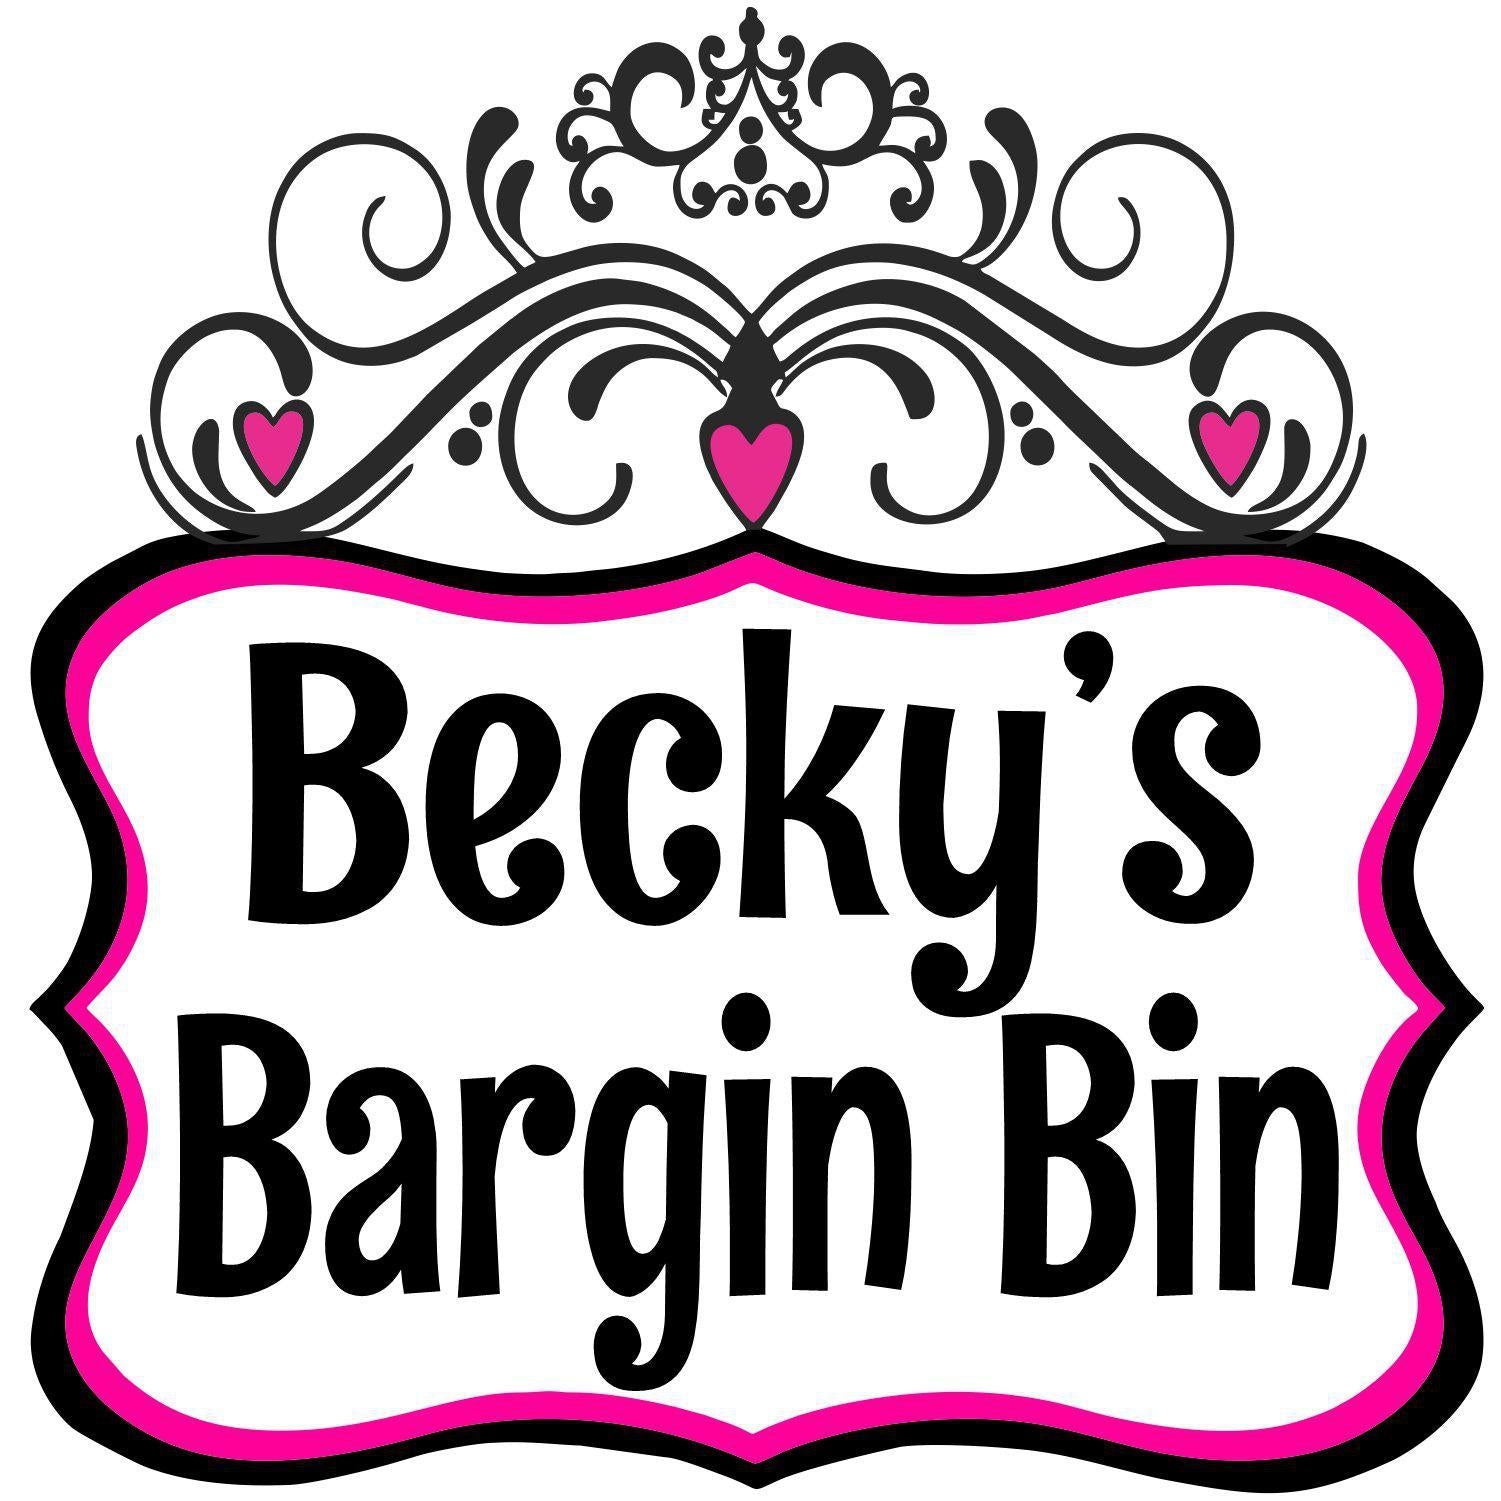 Becky's Bargain Bin-Beckys-Boutique.com